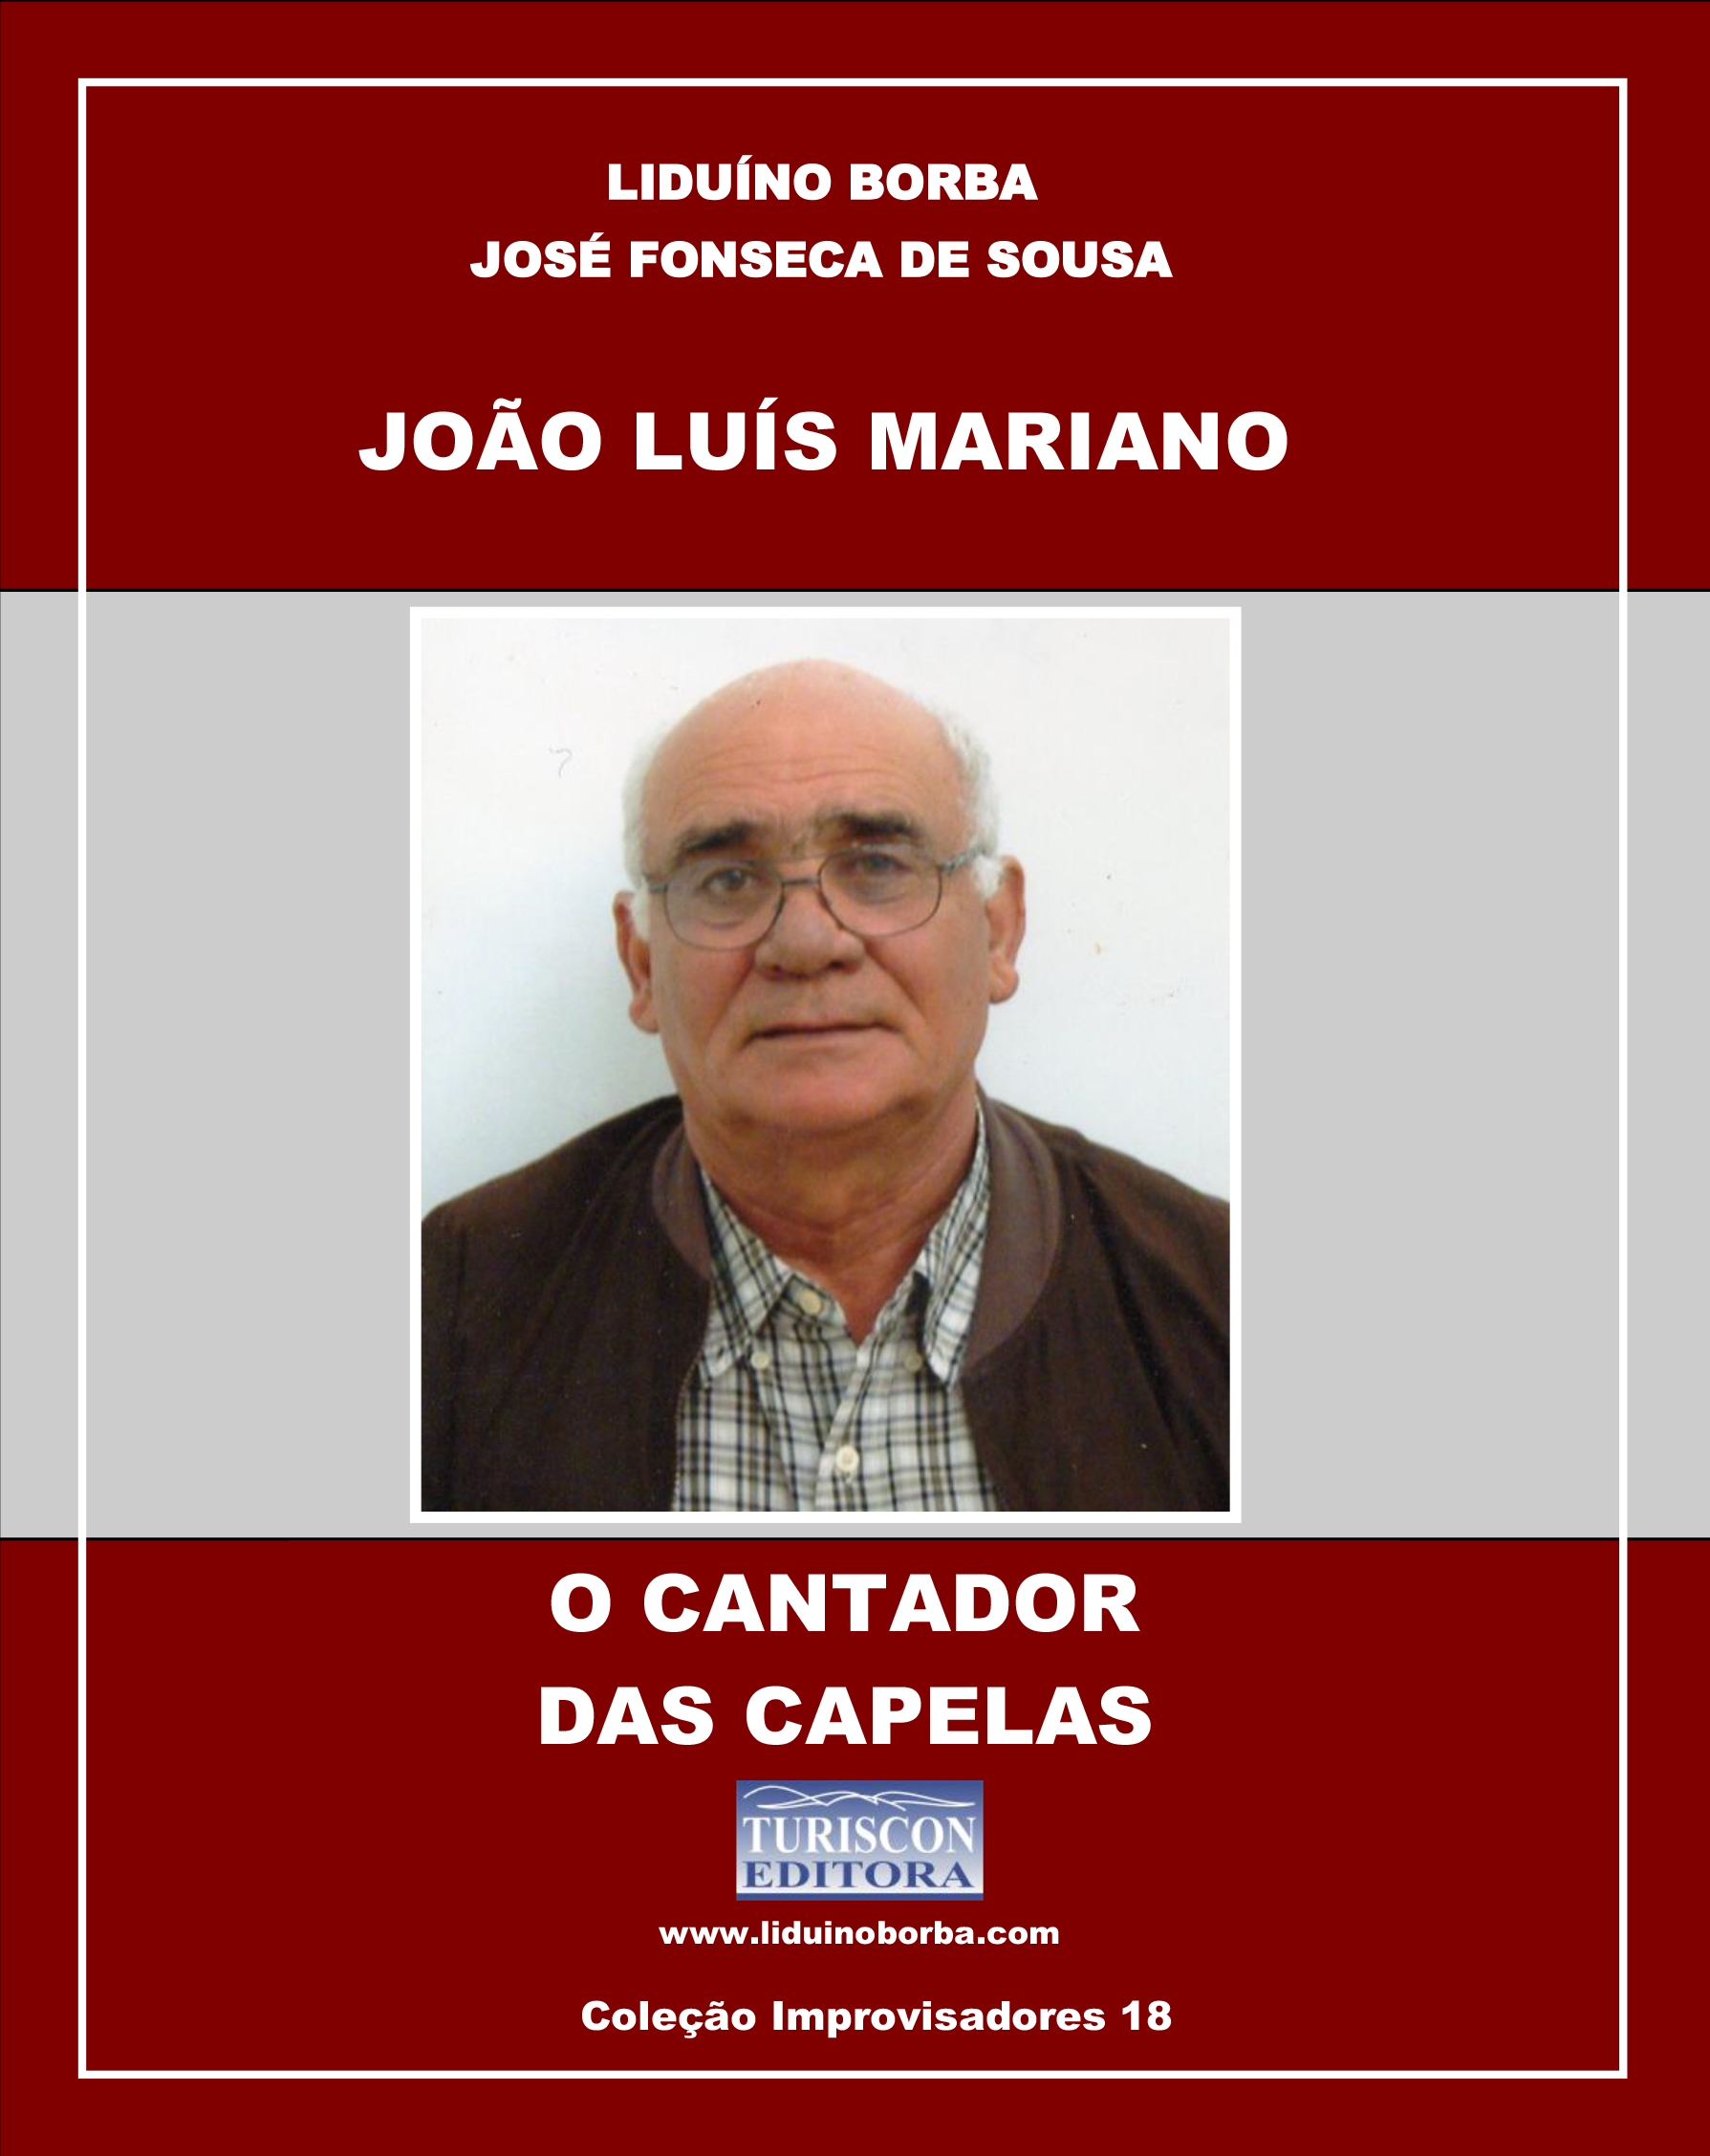 054 1044 João Luís Mariano O Cantador das Capelas, 2016